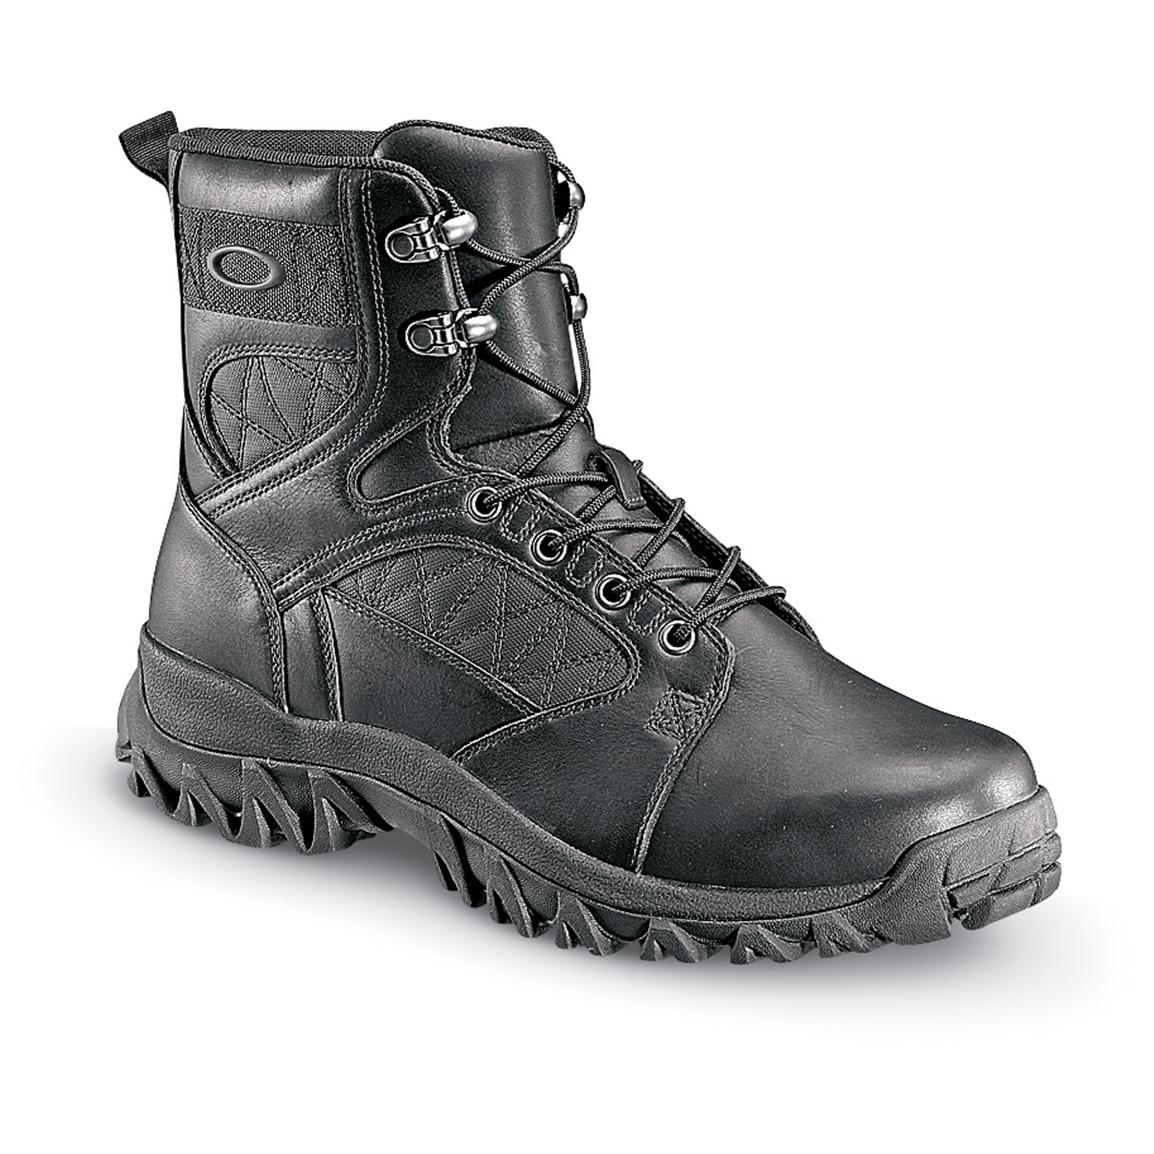 oakley side zip boots